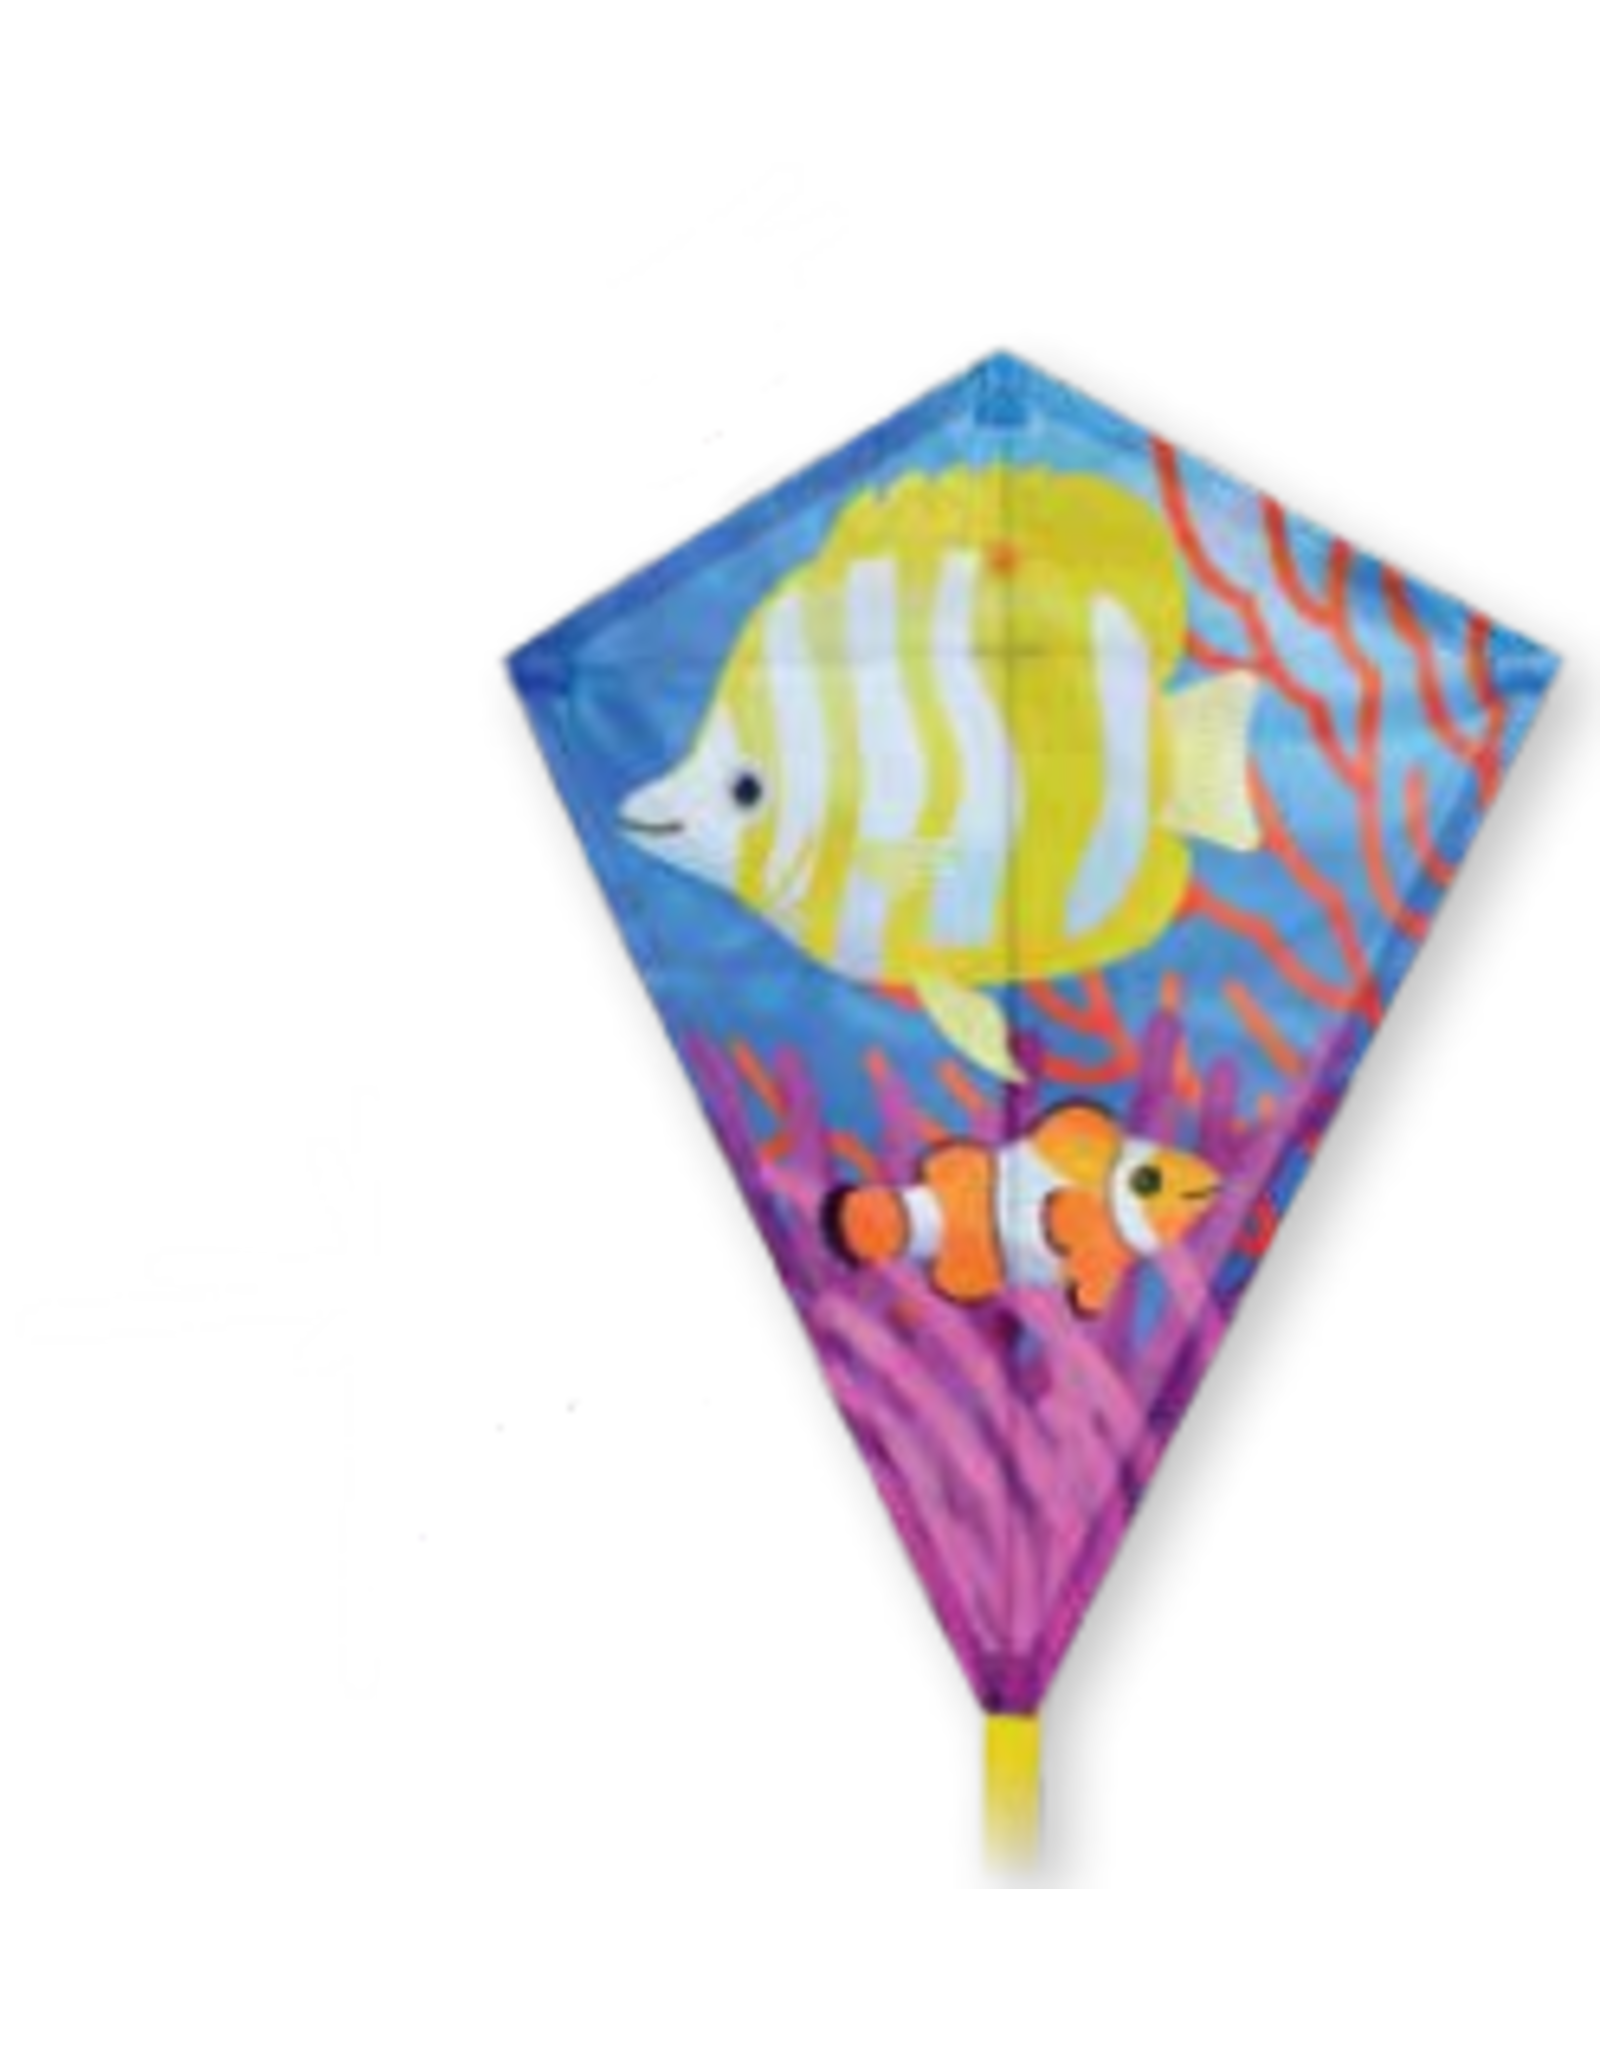 Tropical Fish Diamond Kite 25"